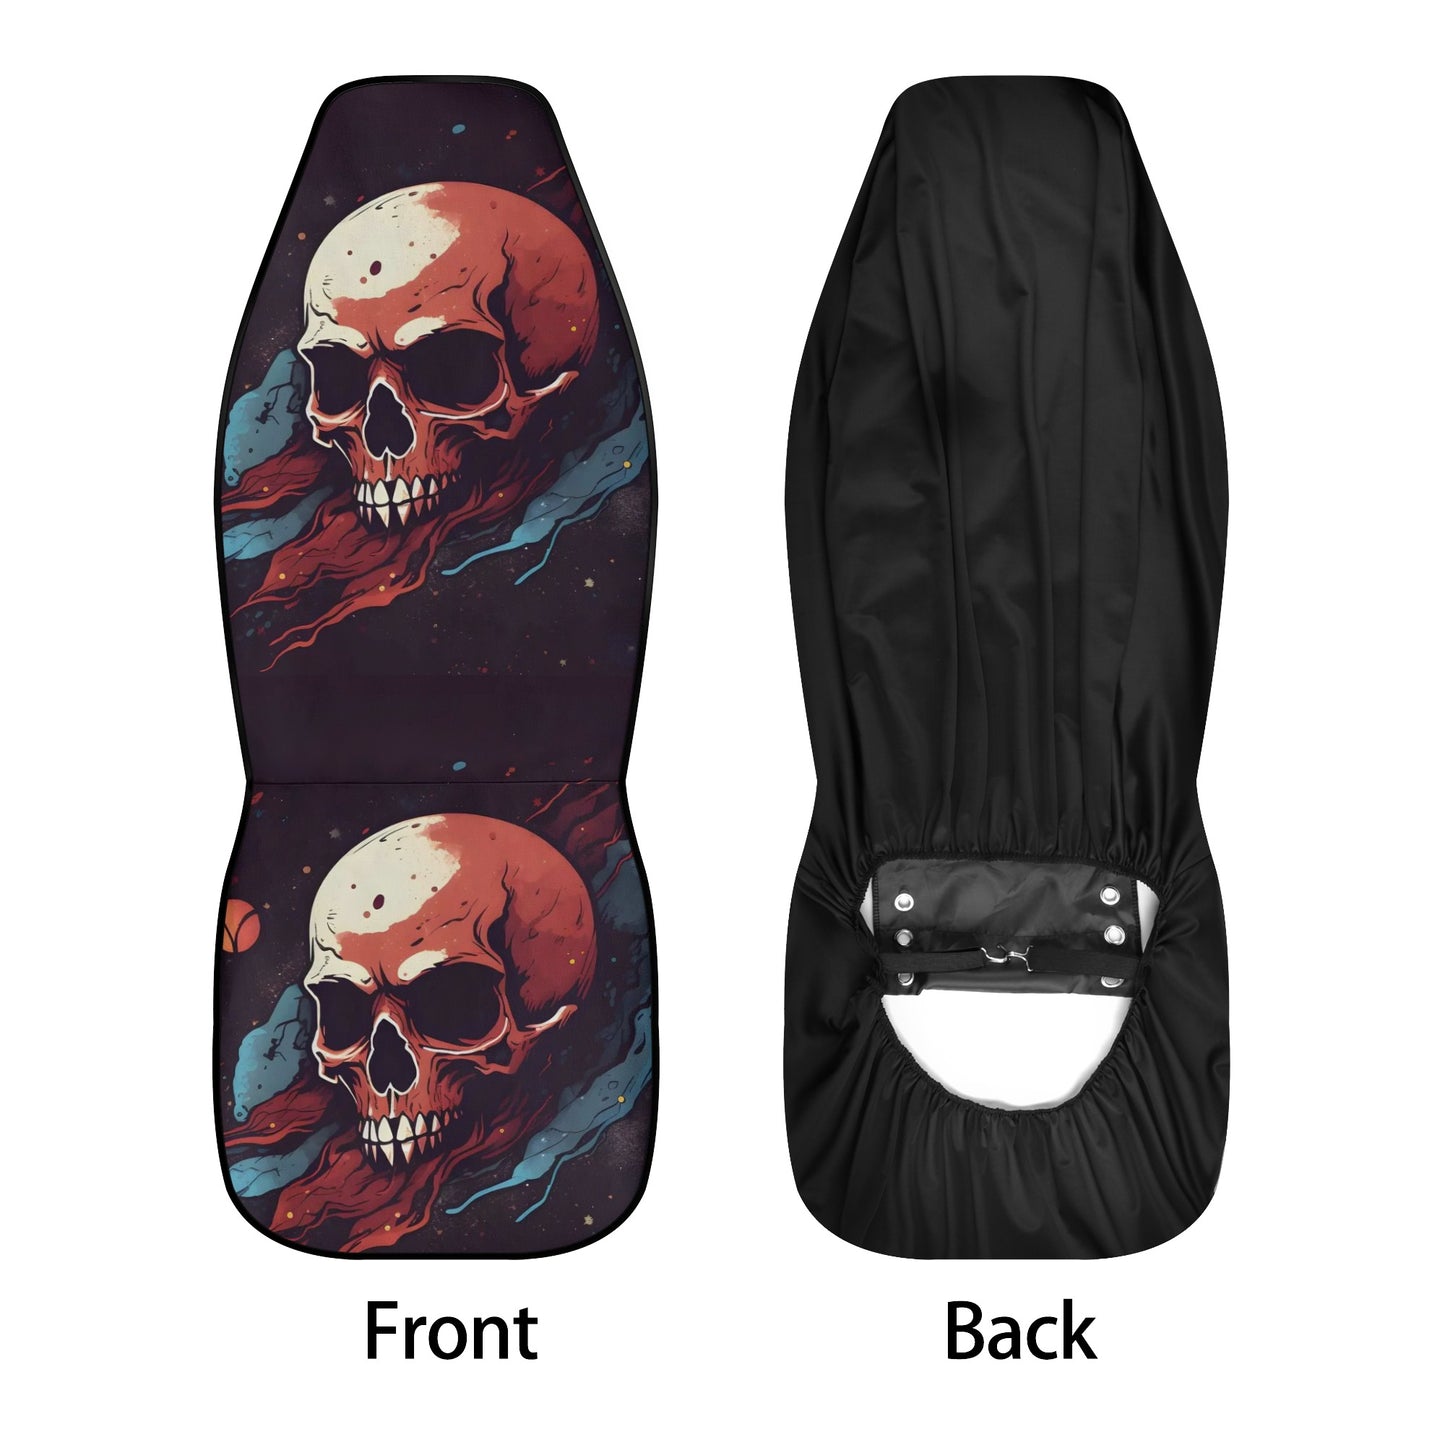 Skeleton slip-on seat covers, biker skull floor mat for car, punisher skull rug for car, biker skull slip-on seat covers, flame skull front